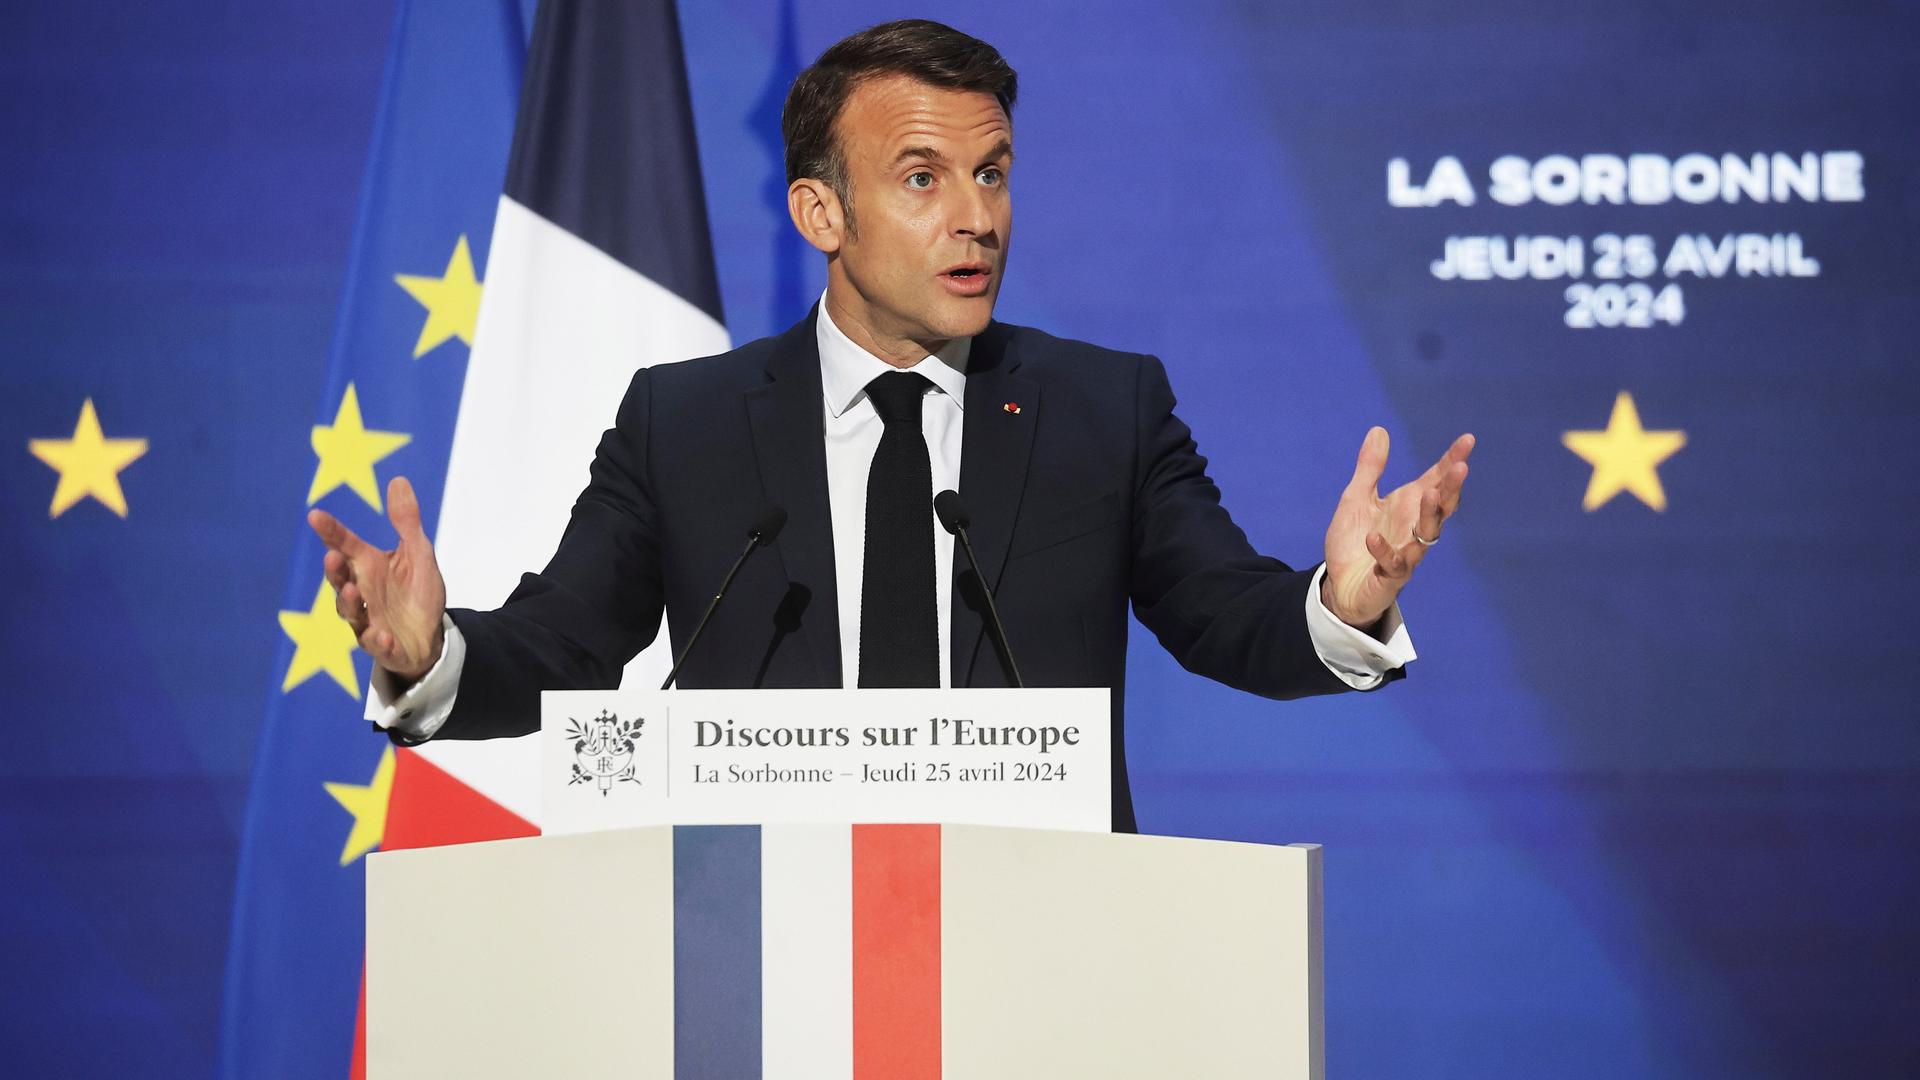 Paris: Der französische Präsident Emmanuel Macron hält eine Rede an einem Rednerpult vor einer französischen Flagge und der EU-Flagge.